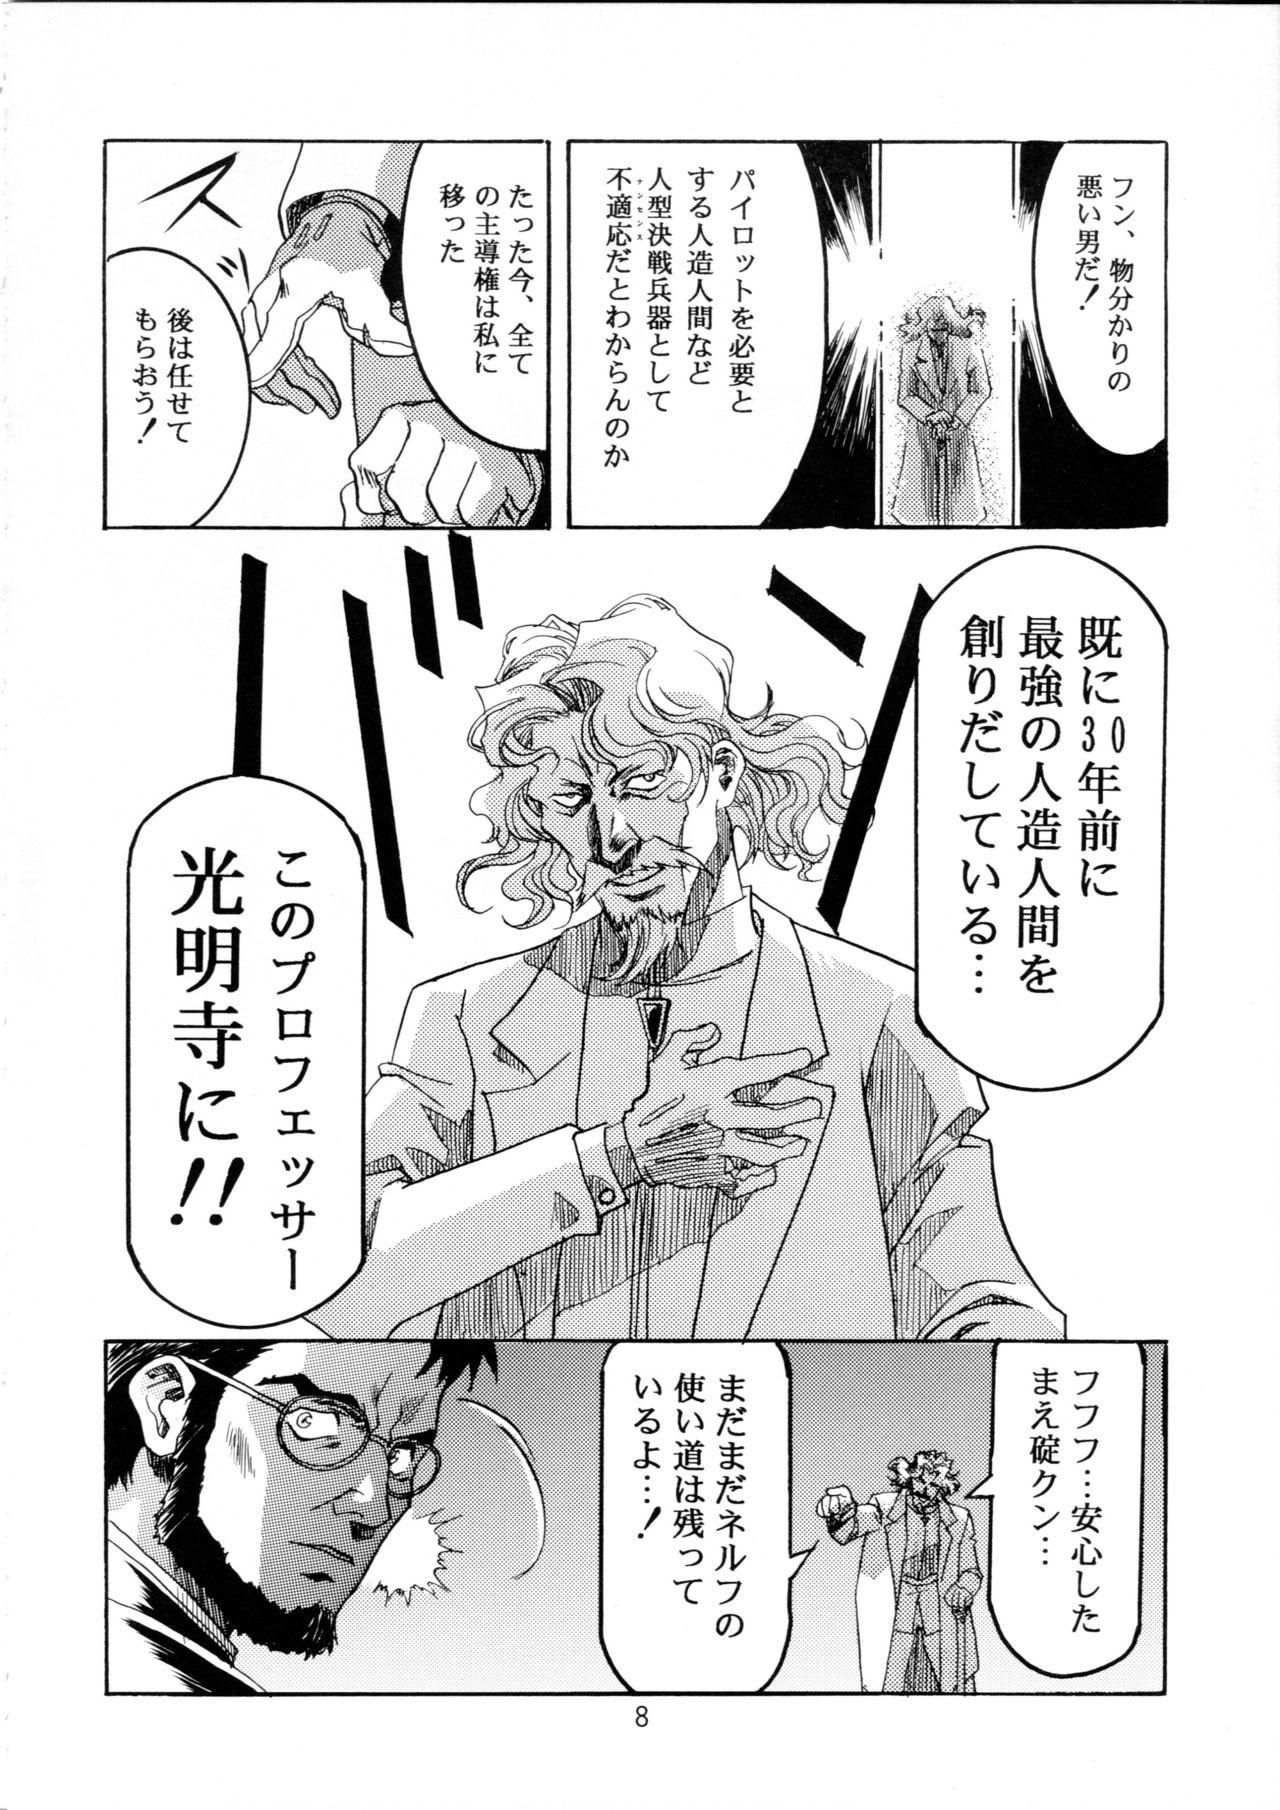 Prima Henreikai Special Vol. 9 - Neon genesis evangelion Street fighter Tokimeki memorial Virtua fighter Husband - Page 7